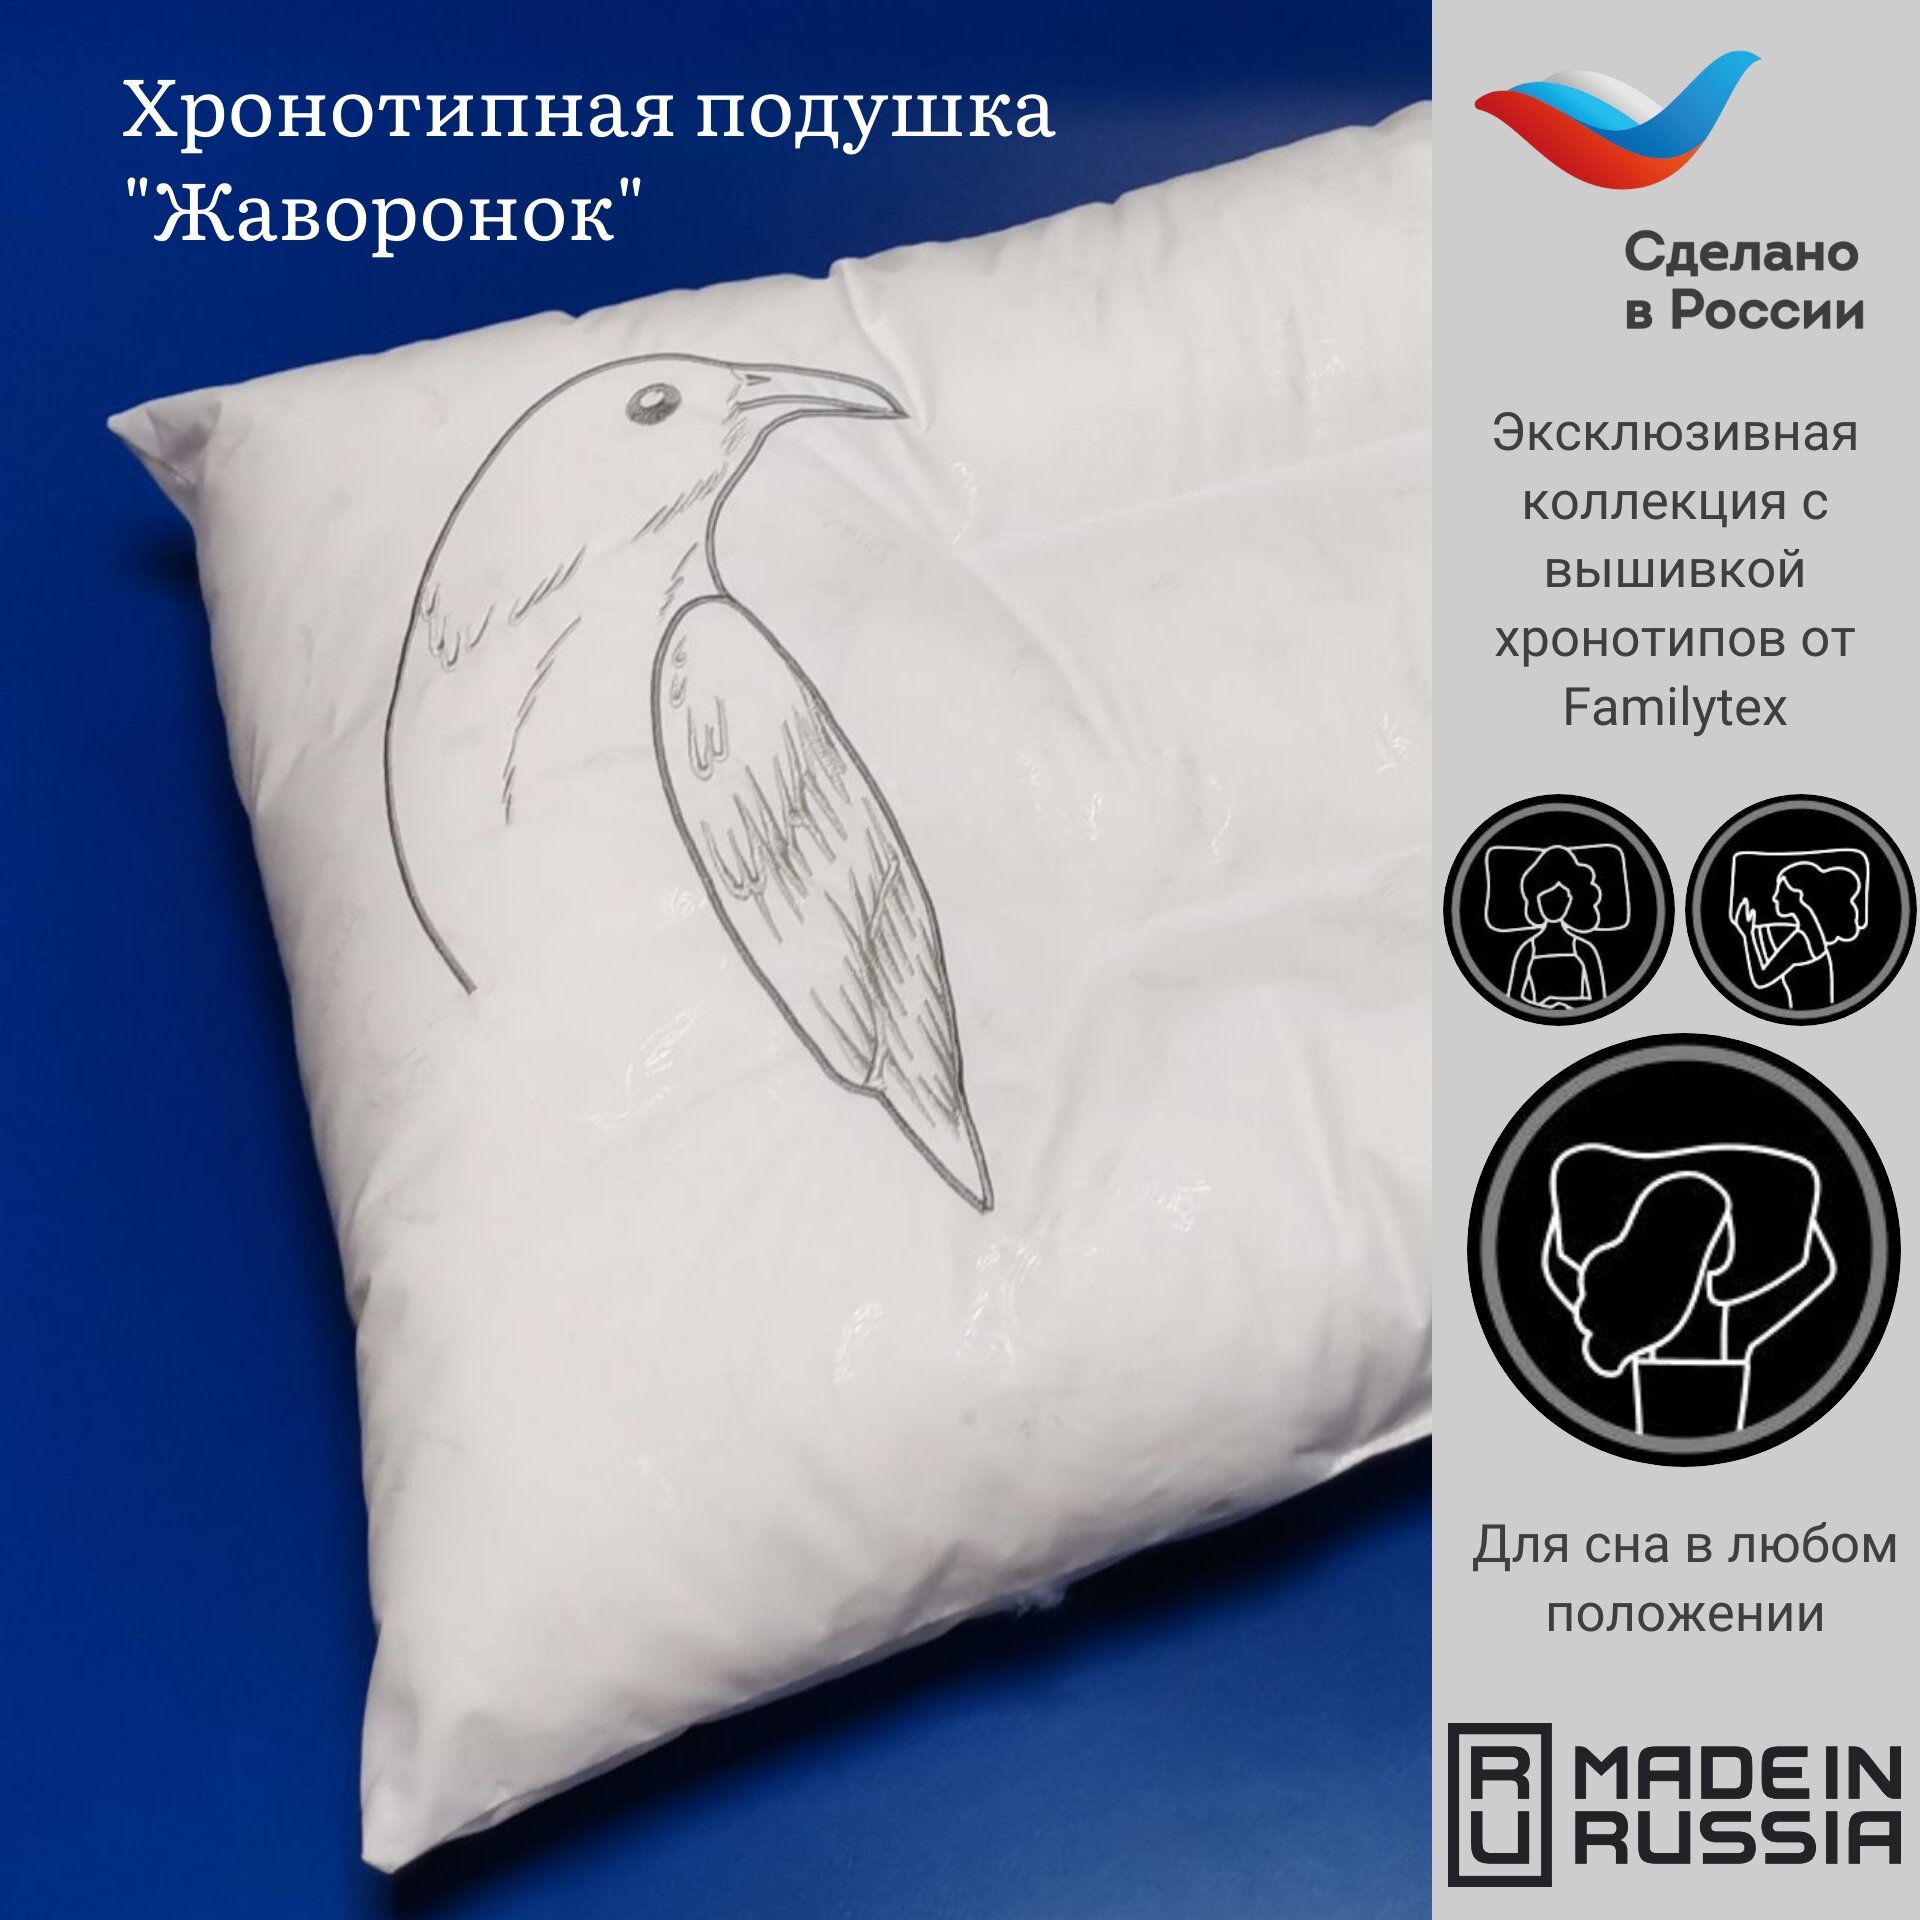 Подушка для сна ПСС2(50х70)В, подушка с вышивкой , хороший подарок, Familytex, подушка хронотип "Жаворонок"